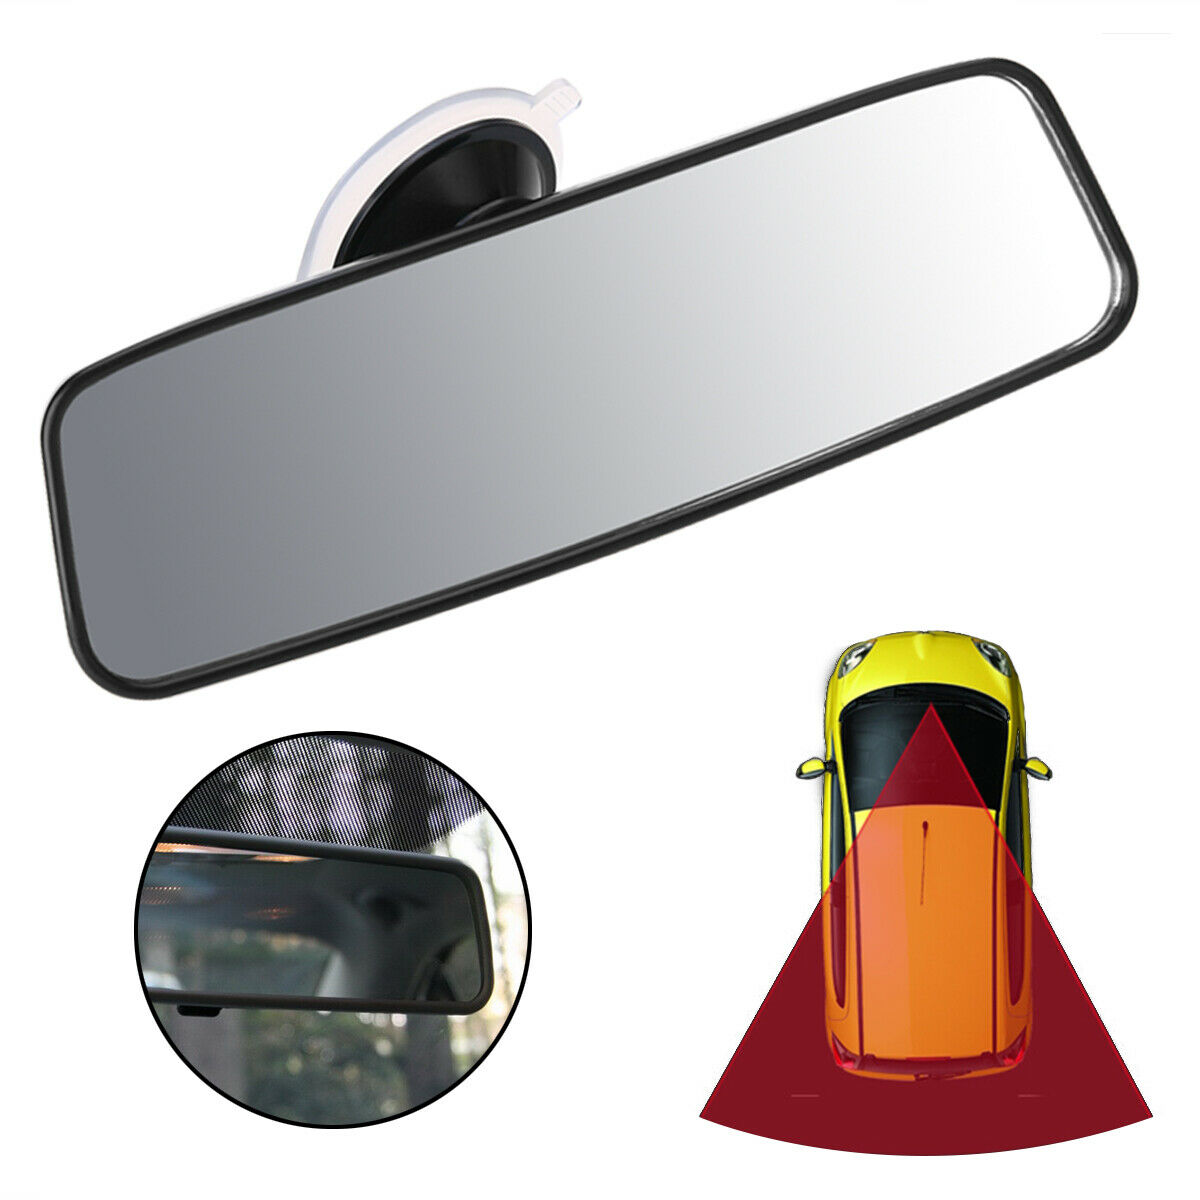 2 Stück Auto-Rückspiegelwischer, einziehbarer Spiegelwischer, tragbare